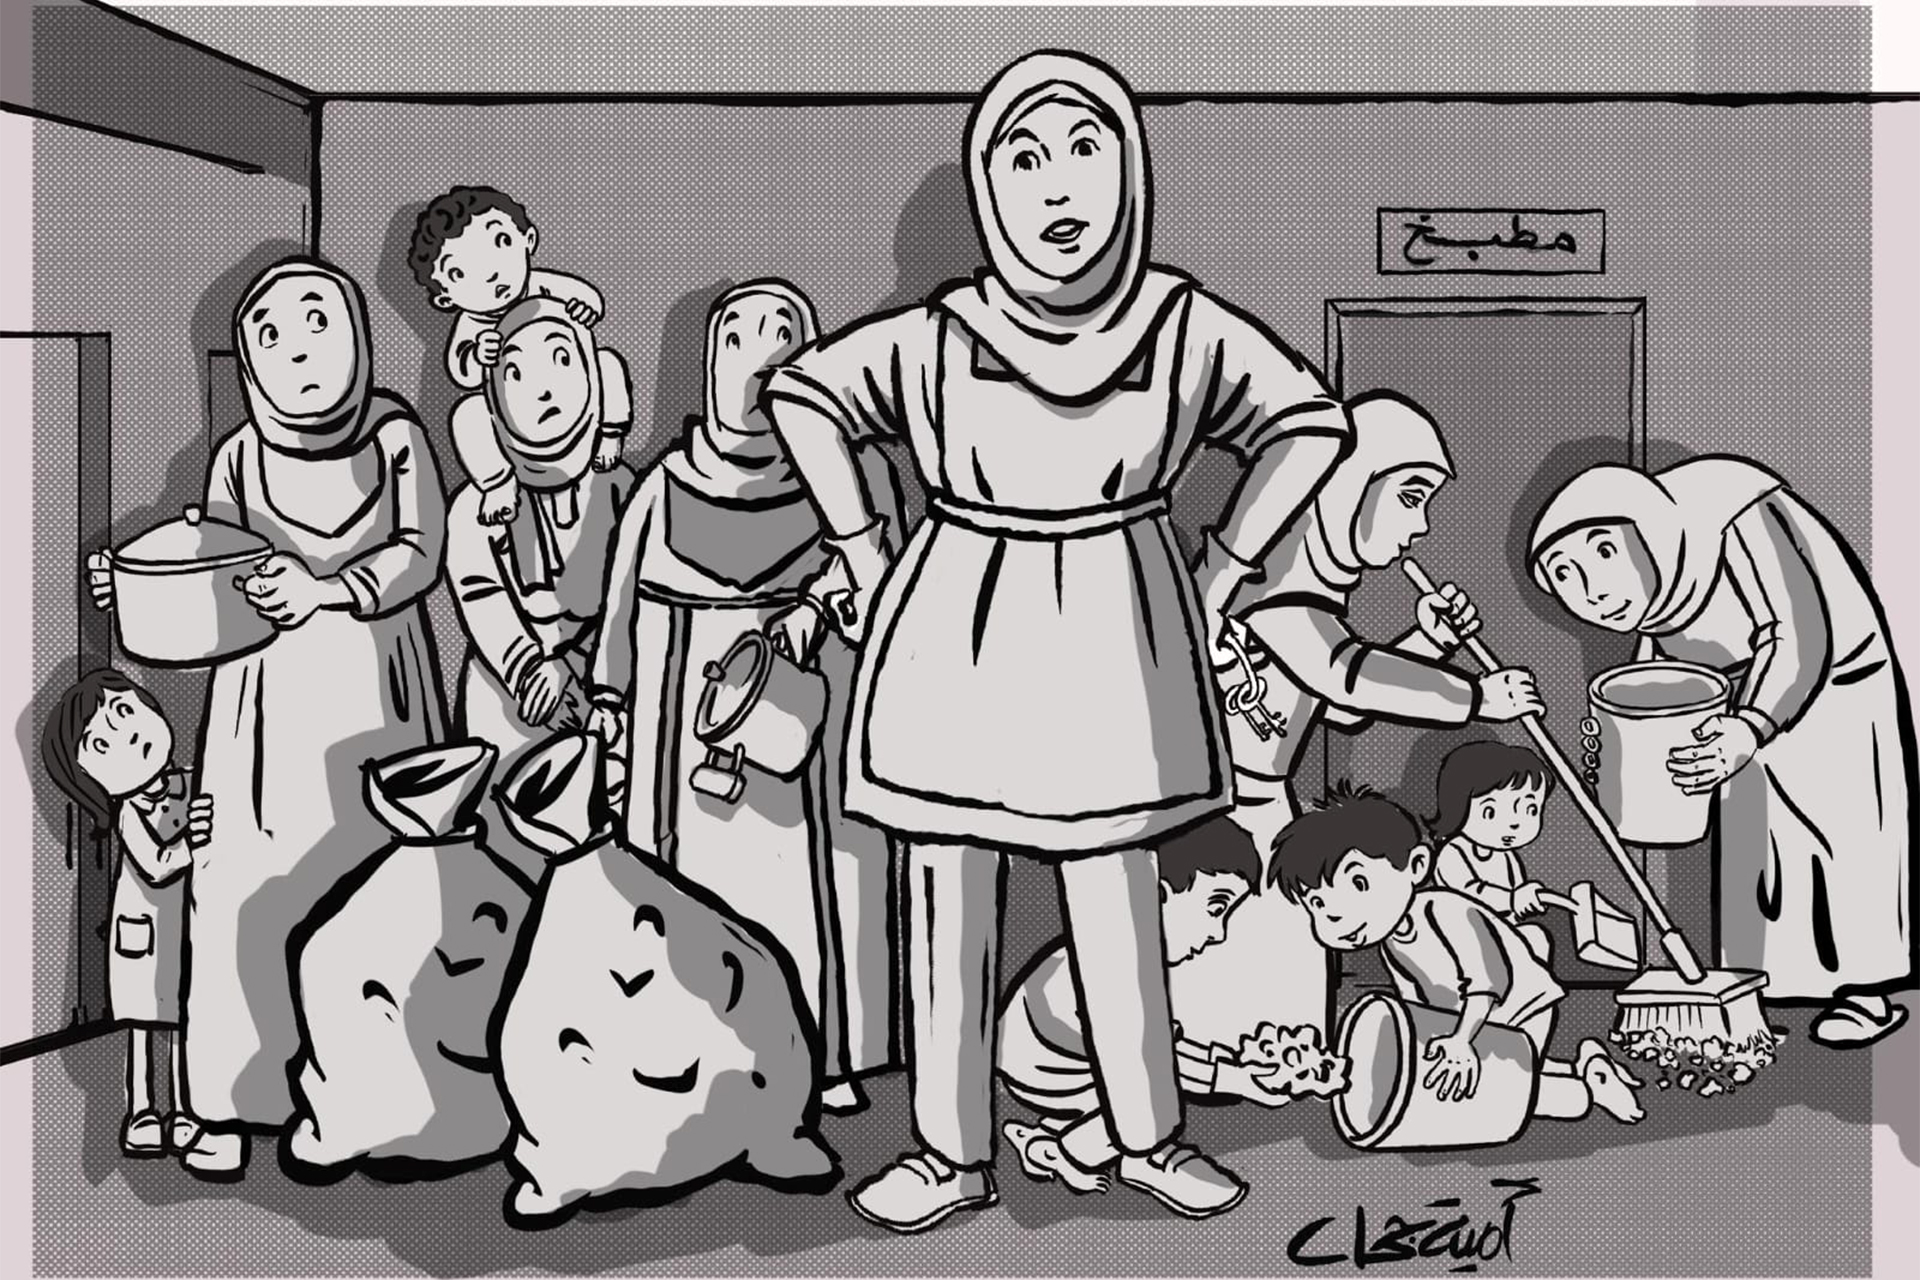 أمية جحا تكتب: يوميات فنانة تشكيلية من غزة نزحت قسرا إلى عنبر الولادة القيصرية (4) | ثقافة – البوكس نيوز